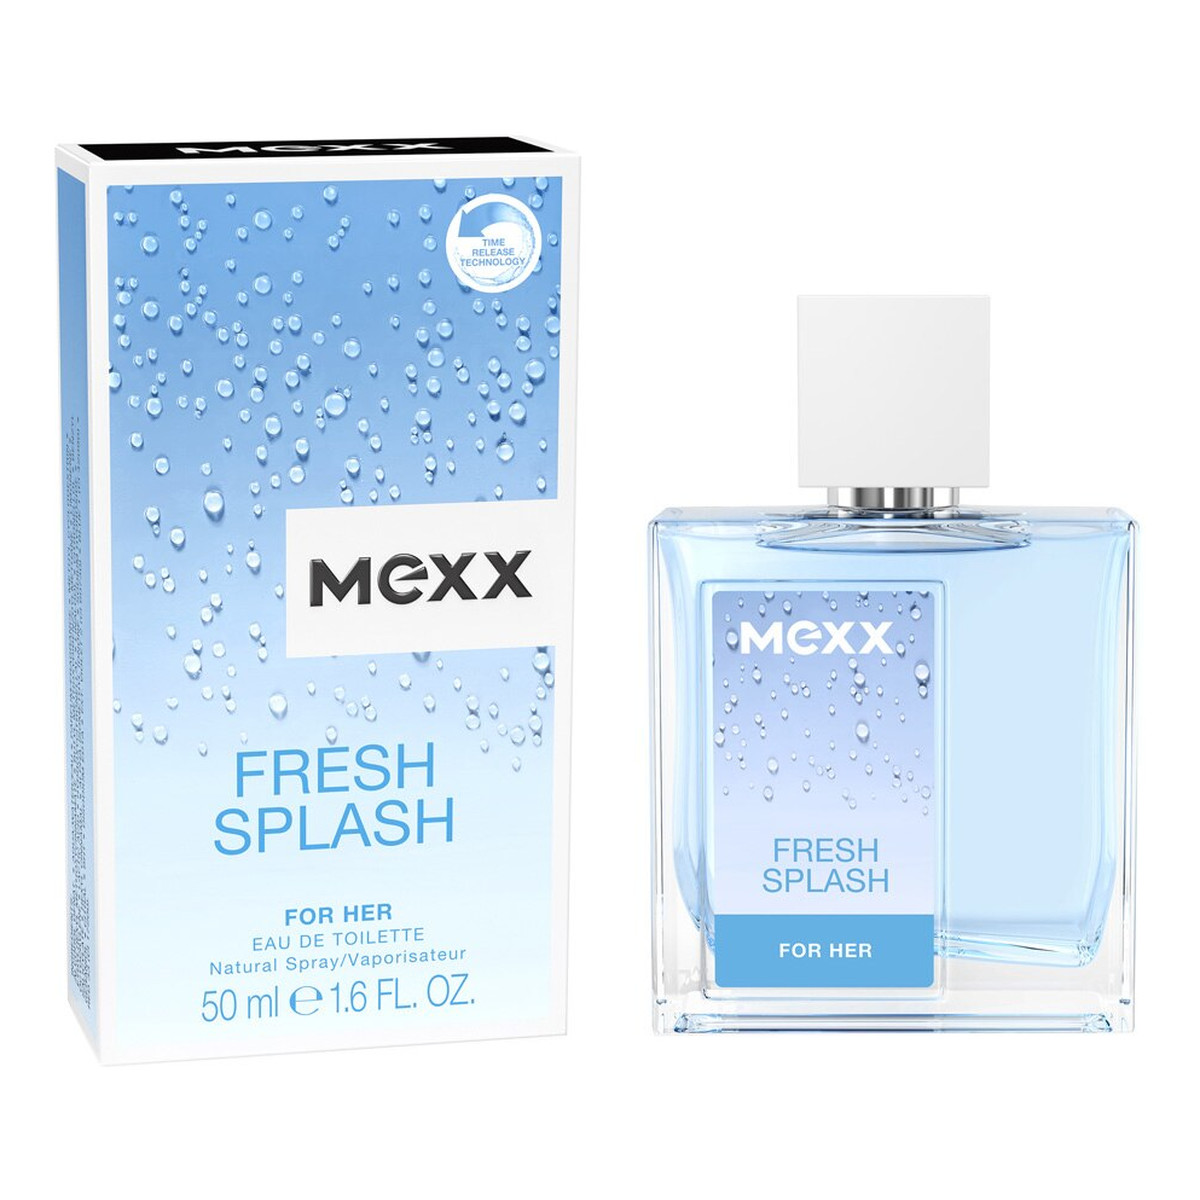 Mexx Fresh Splash For Her Woda toaletowa spray 50ml